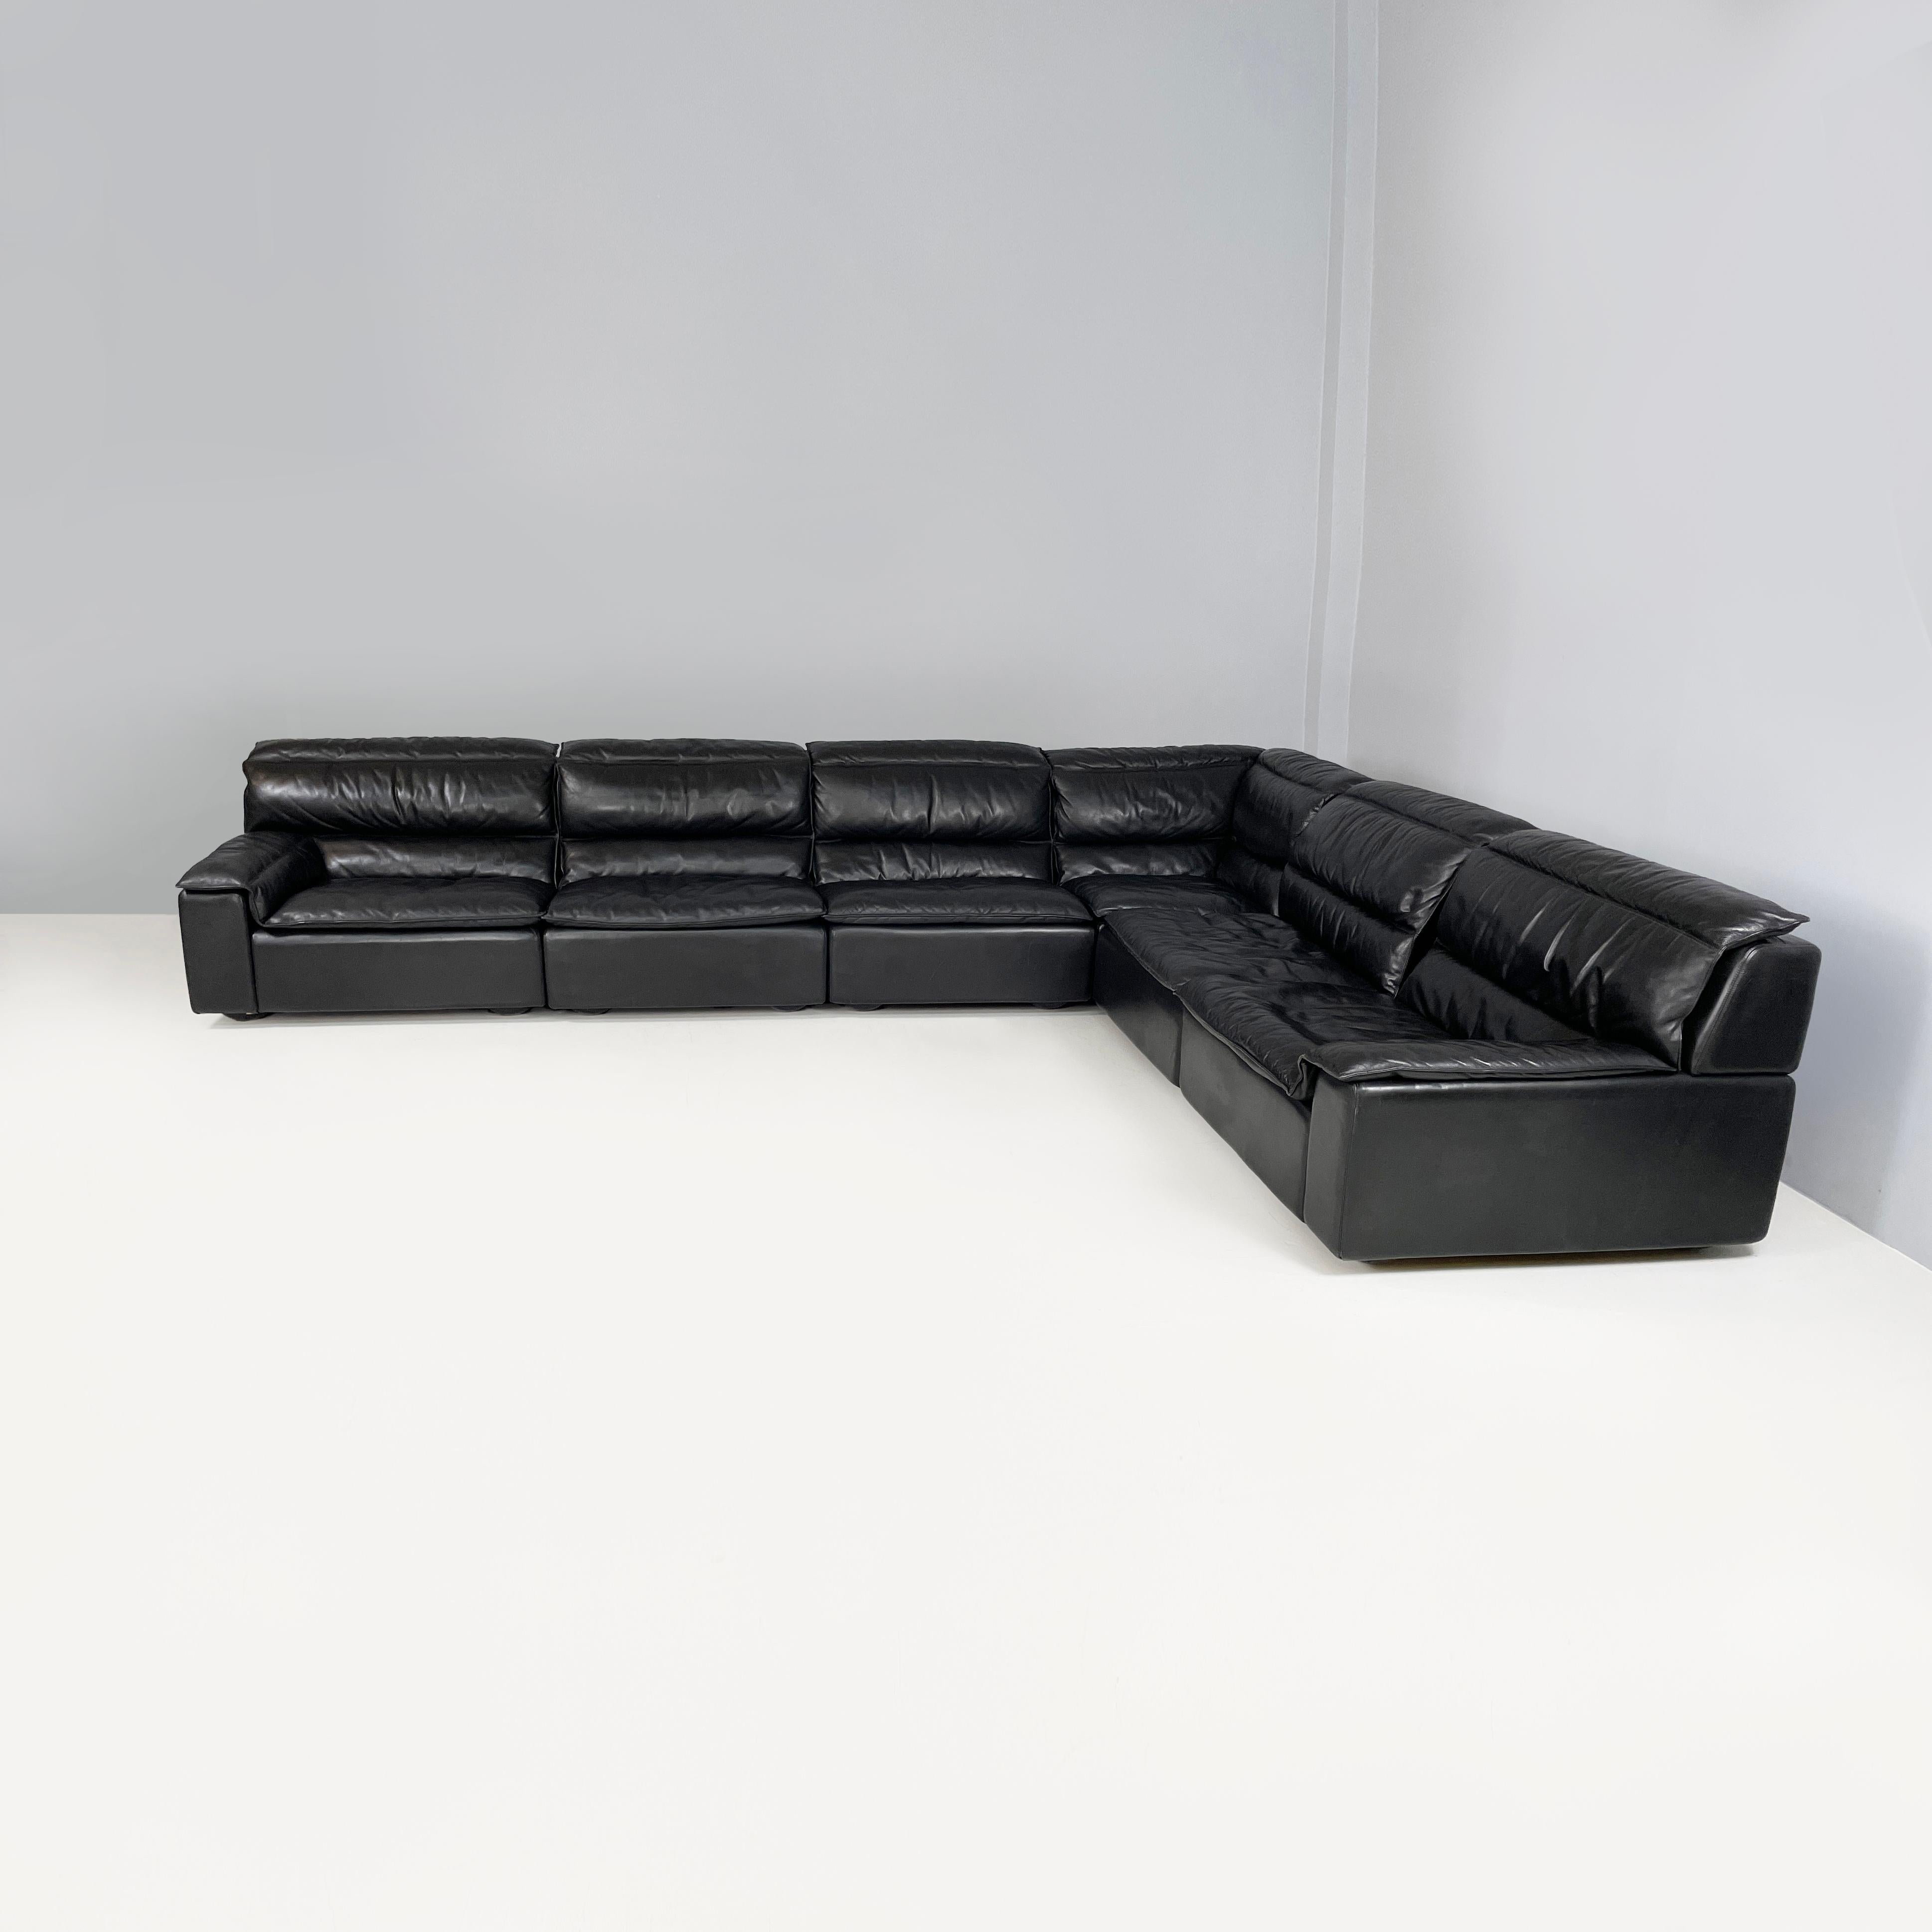 Modern Italian modern black leather sofa Bogo Carlo Bartoli Rossi for Albizzate, 1970s For Sale